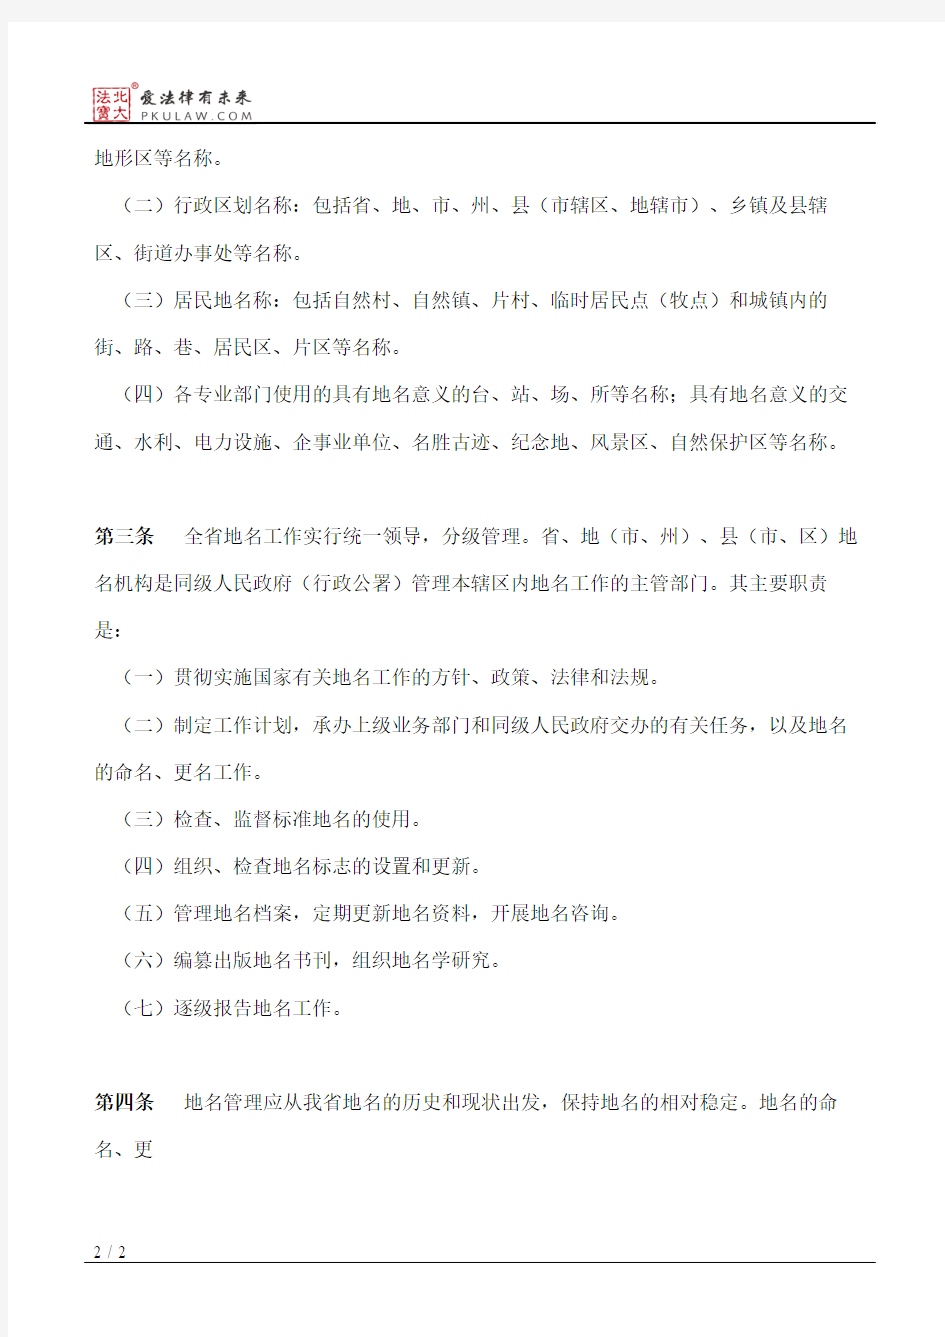 甘肃省地名管理条例实施办法